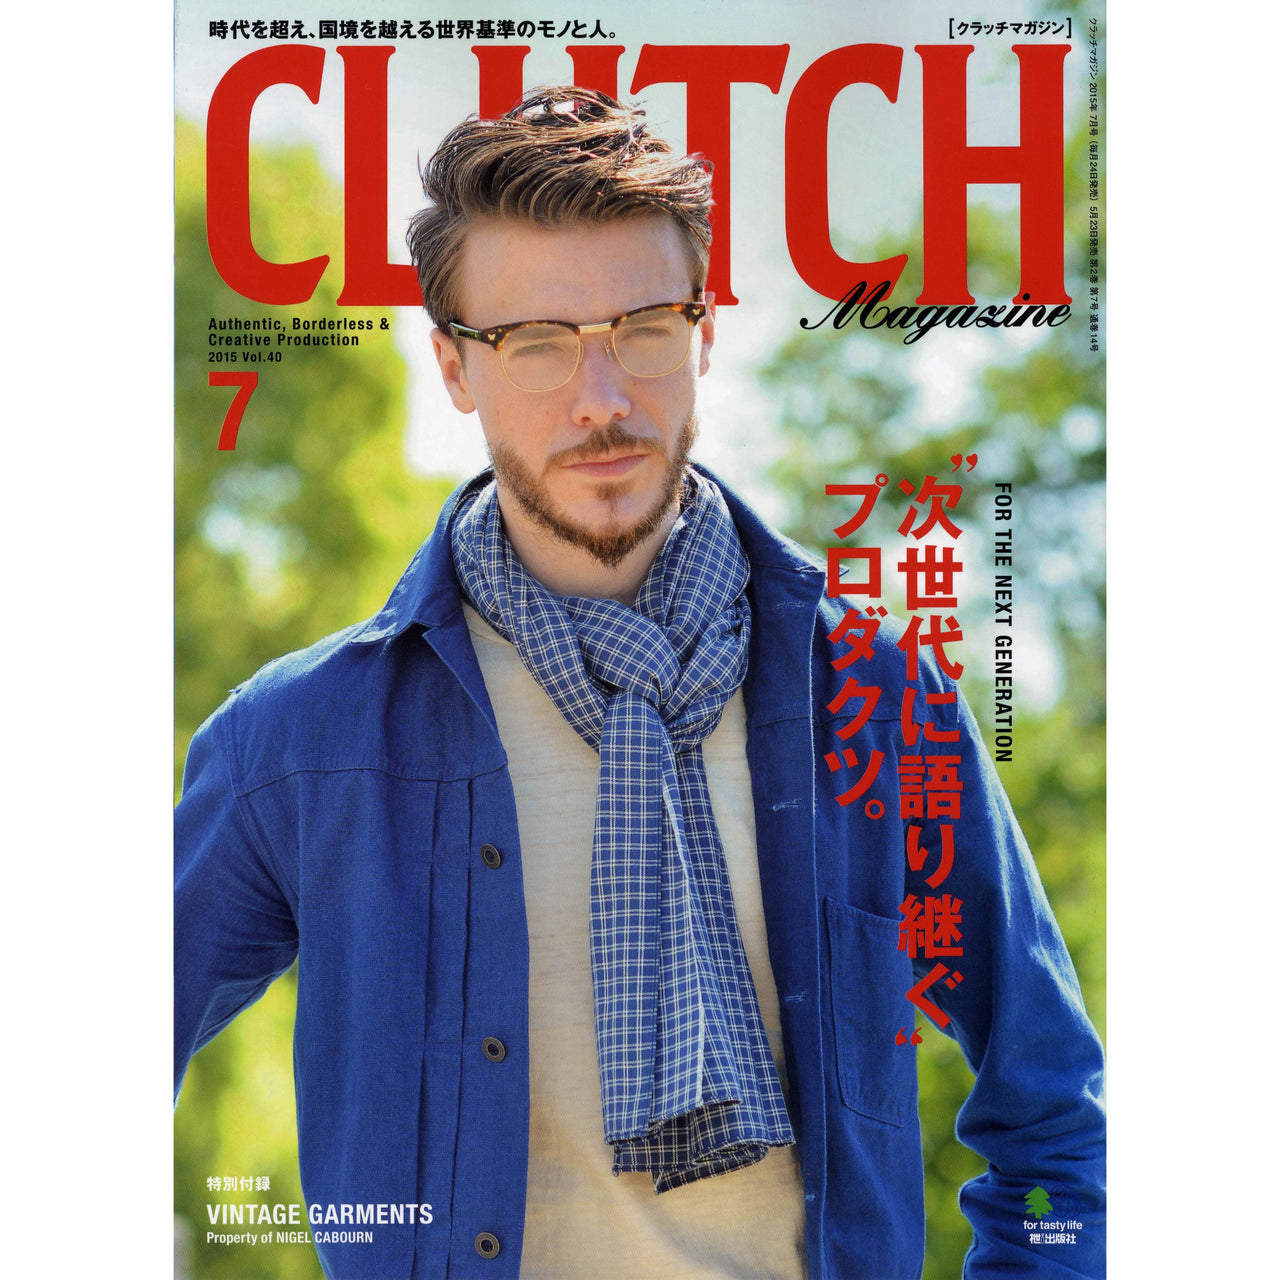 Clutch Magazine Vol.40-Clutch Cafe